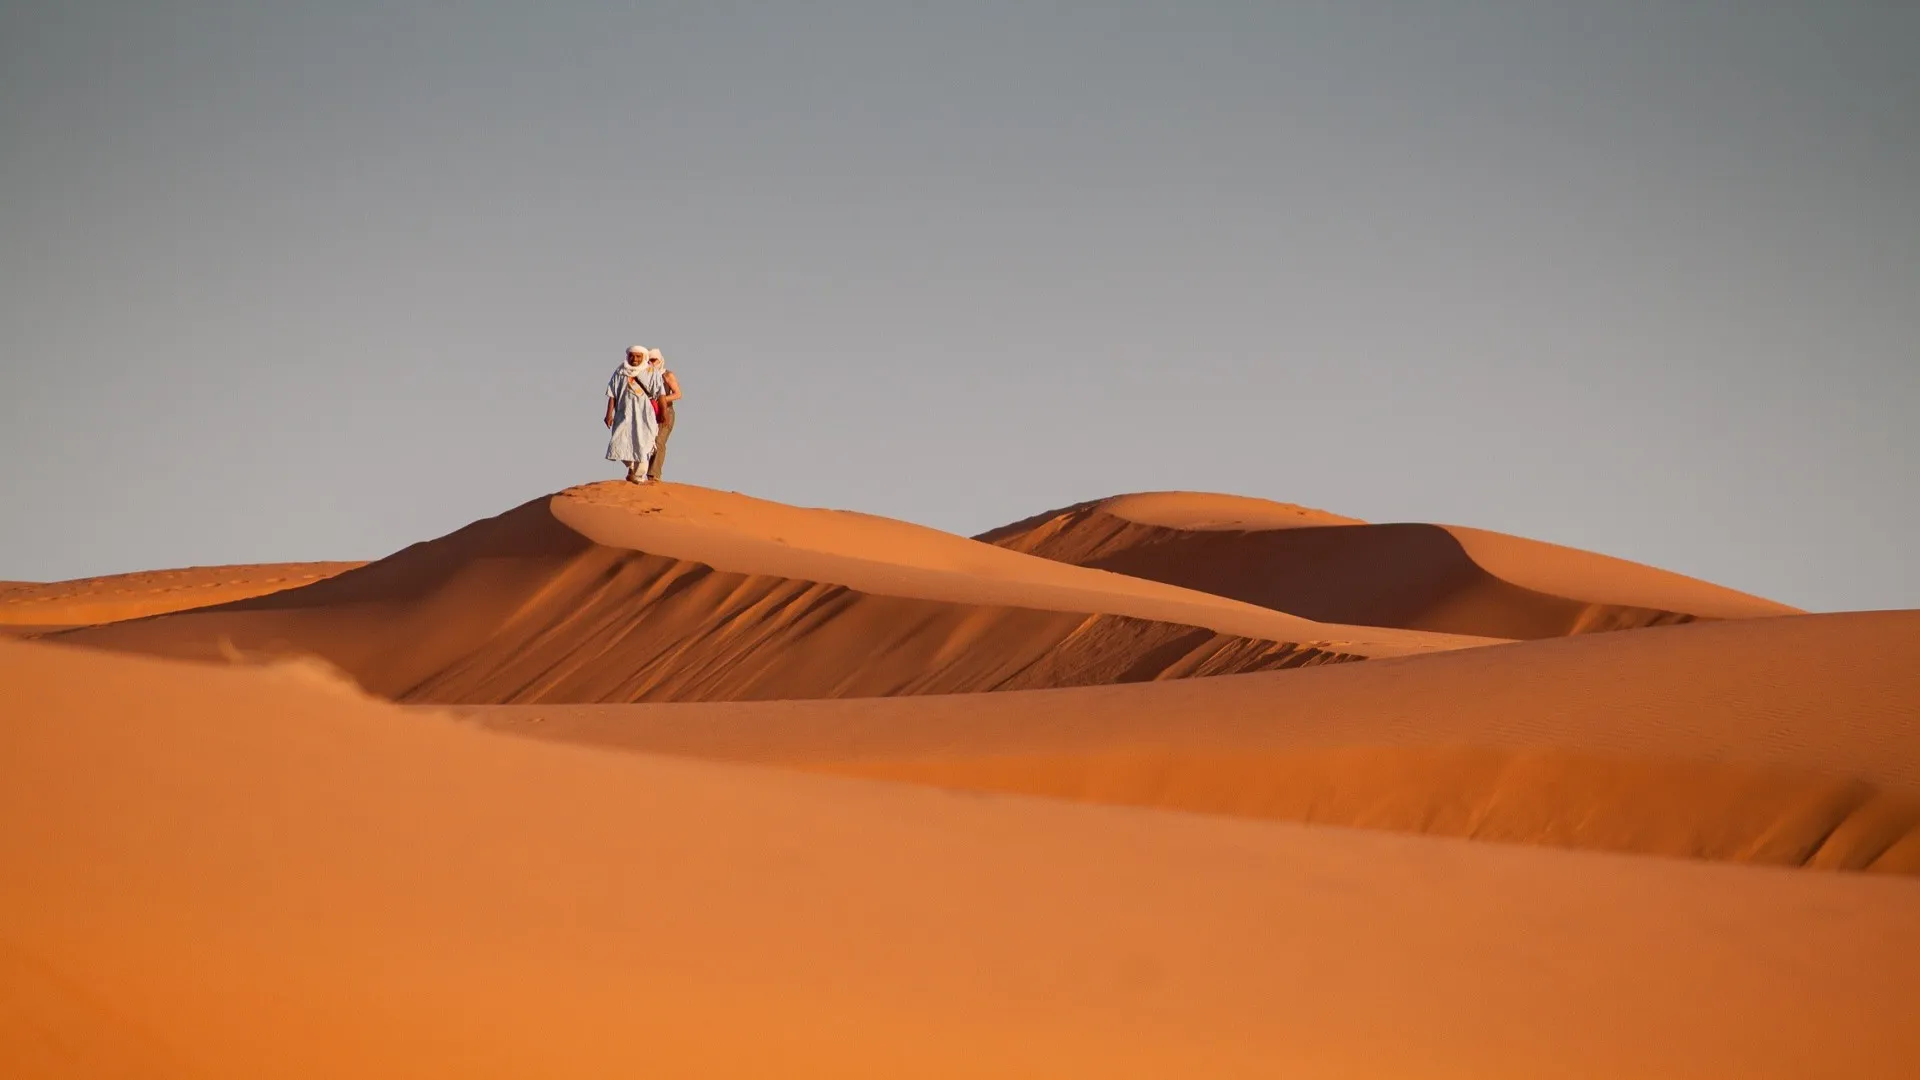 Man lopend in woestijn op oranje zandduin, Zuid Marokko